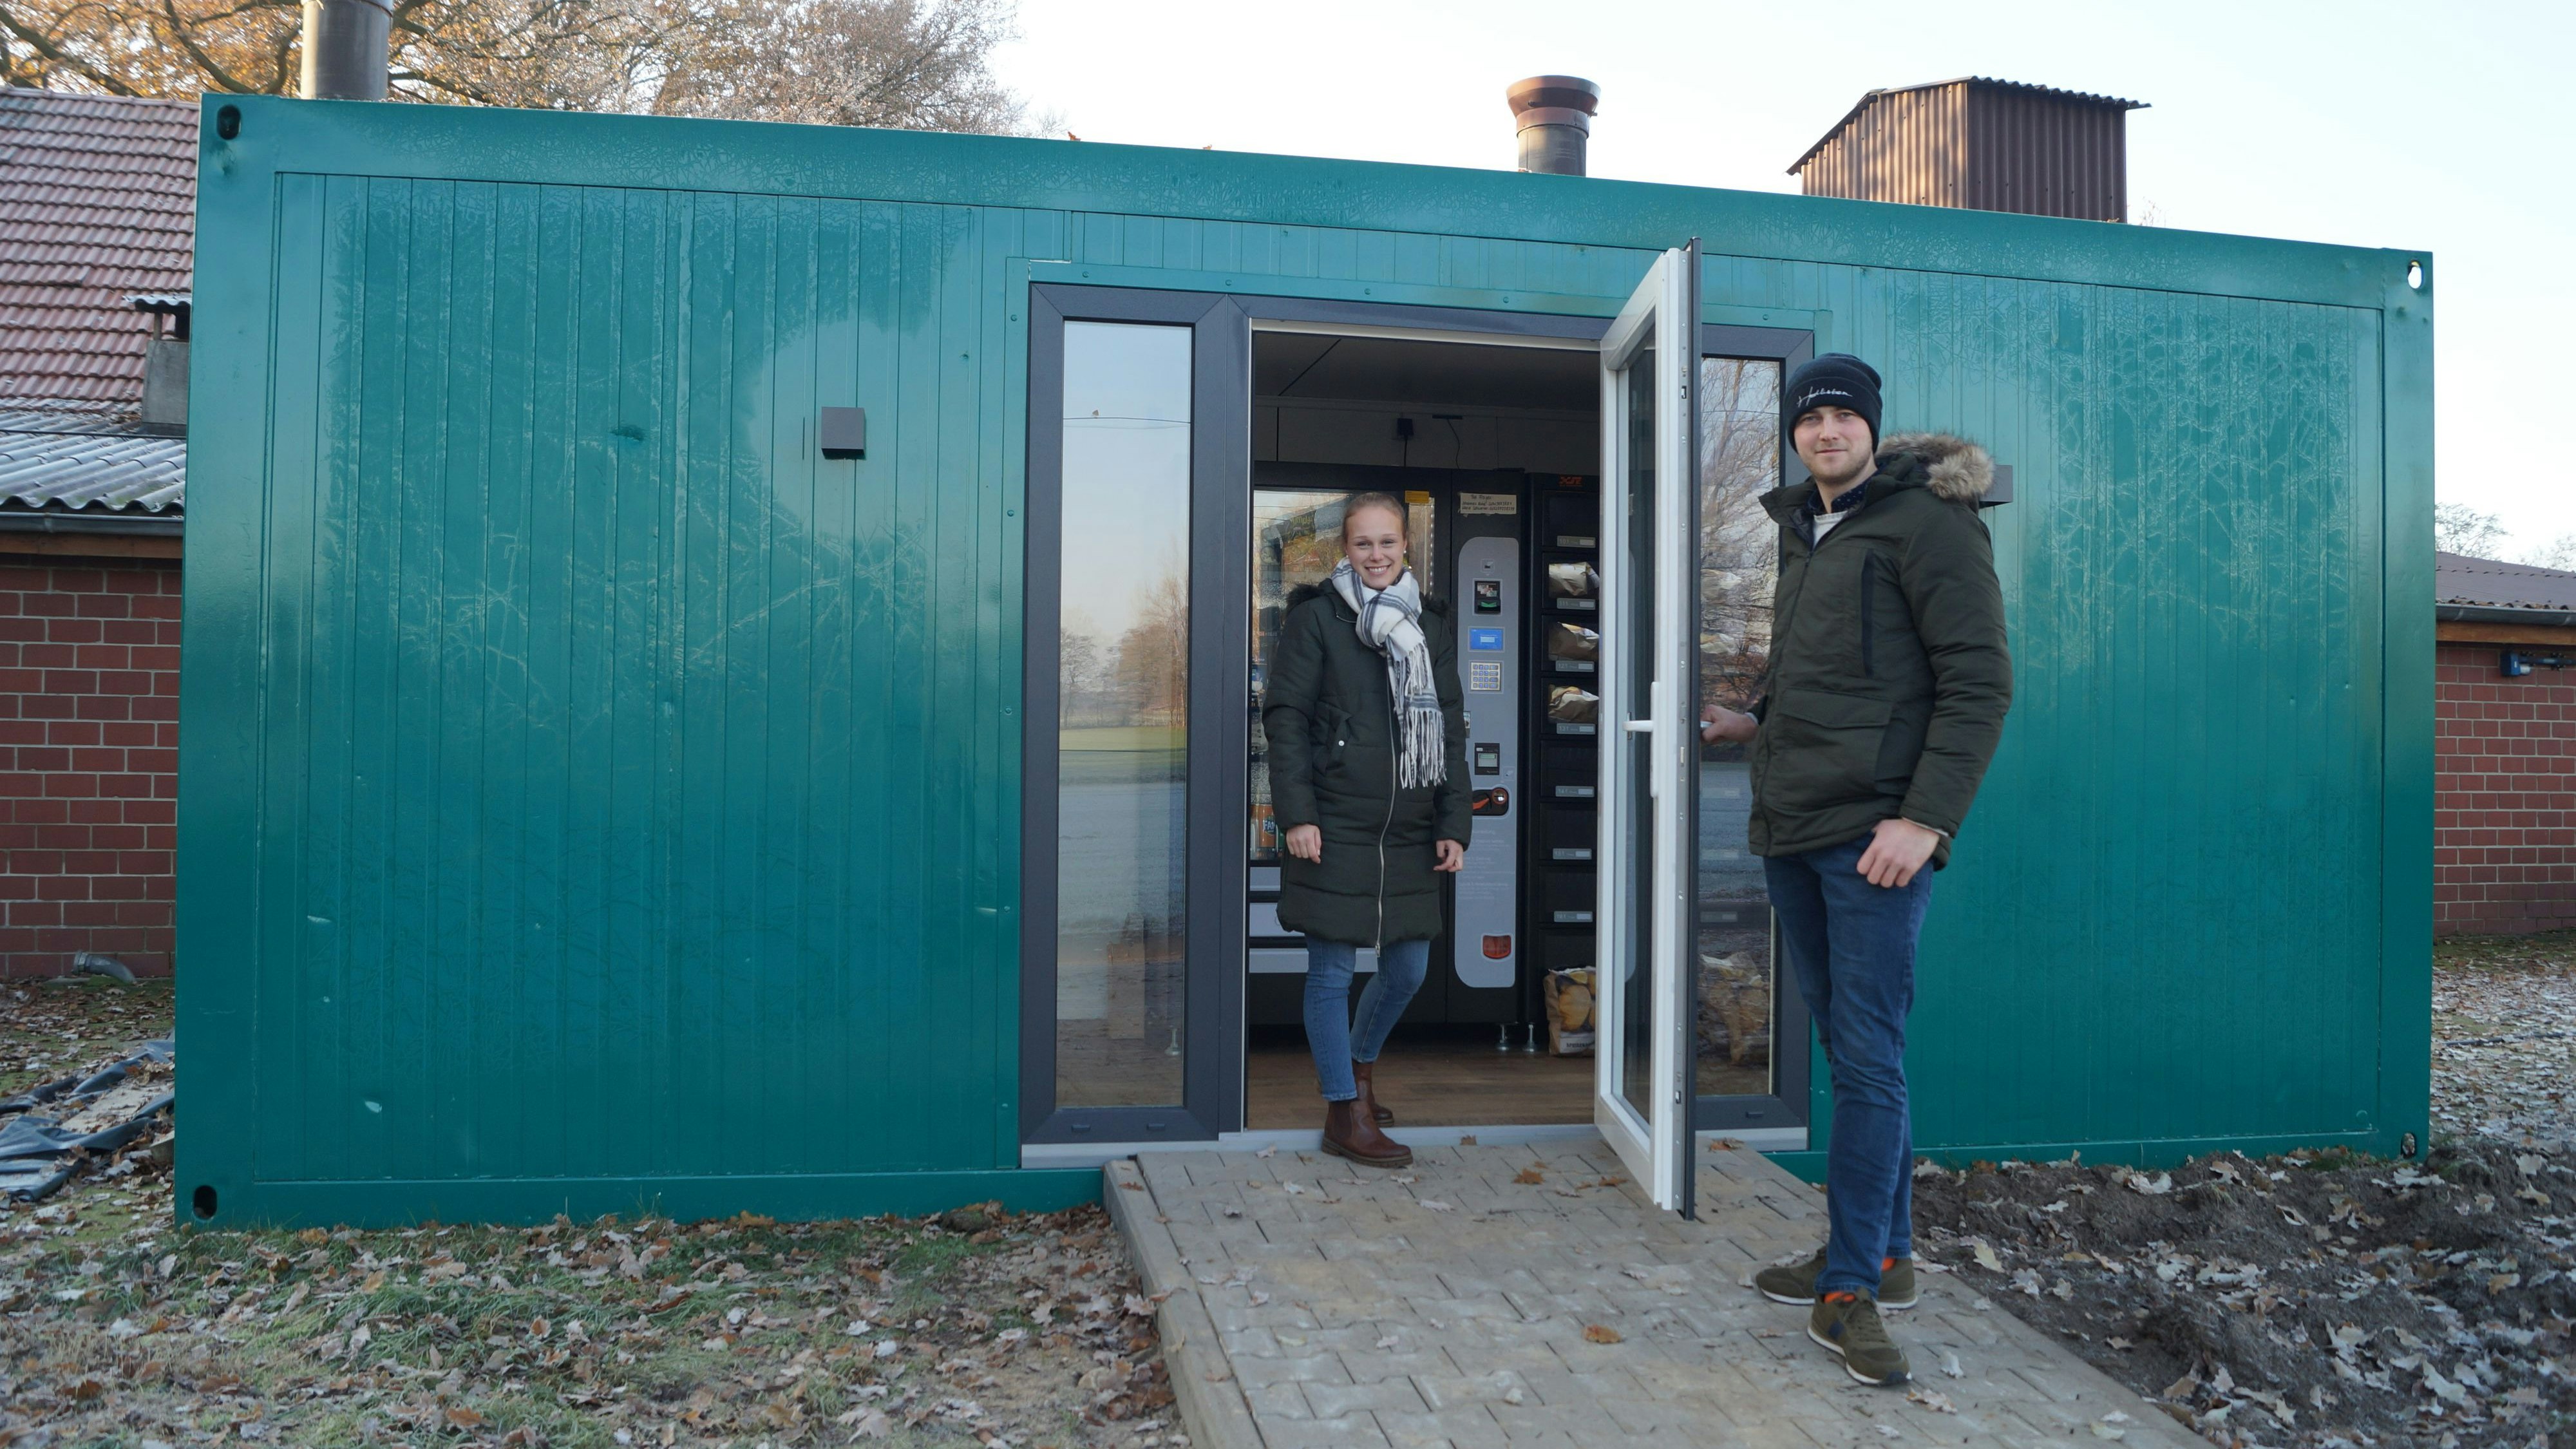 Hereinspaziert: Marie Schwerter und Johannes Ruhe hoffen auf zahlreiche Kundinnen und Kunden für ihren neuen Verkaufsautomaten in Lüsche. Foto: C. Meyer